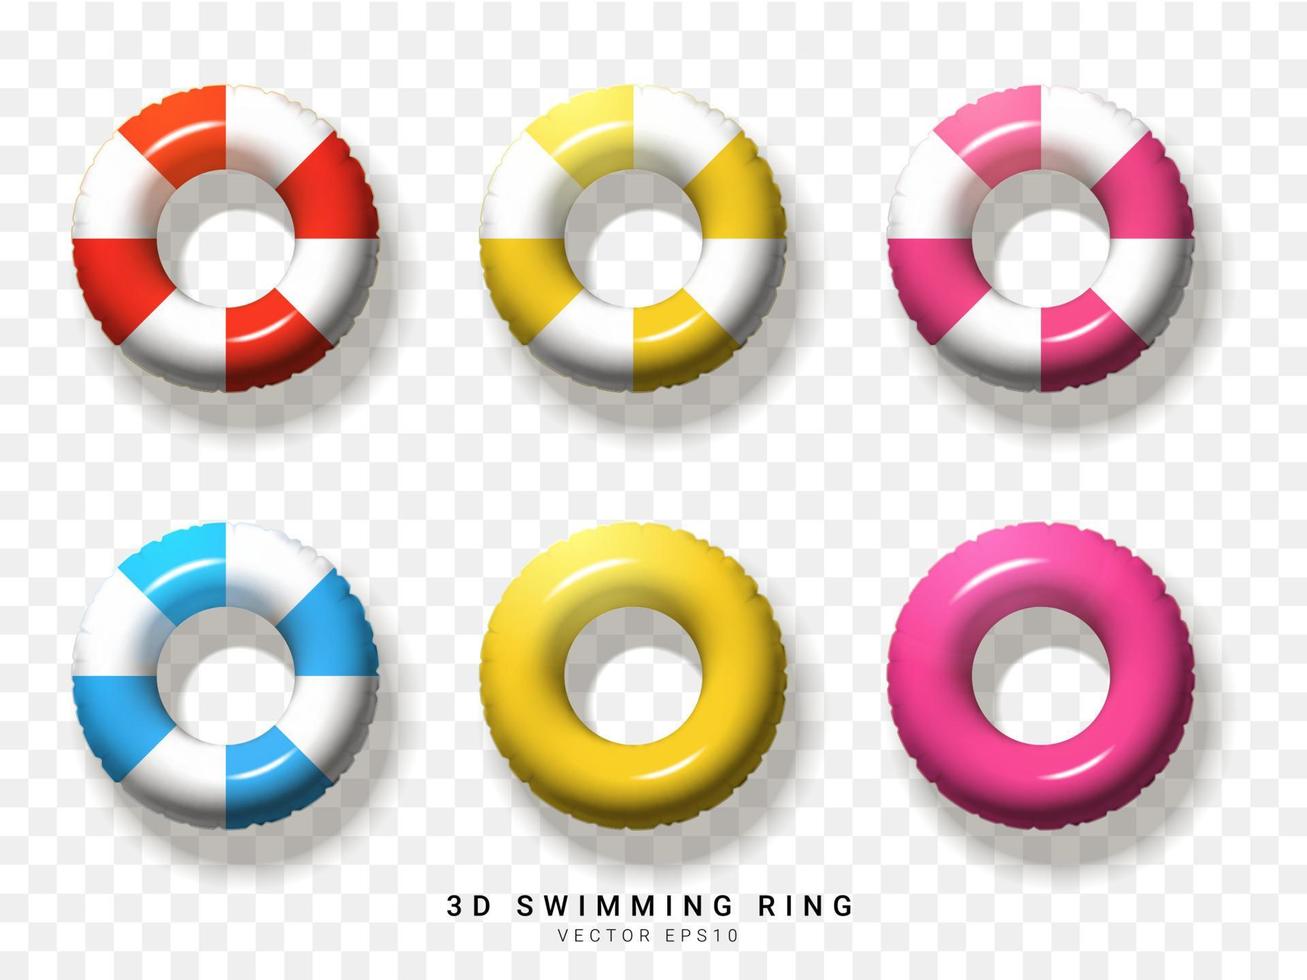 rot, gelb, rosa, blau, weiß, aus 3d-schwimmringelement auf transparentem hintergrund. Vektor-Illustration vektor